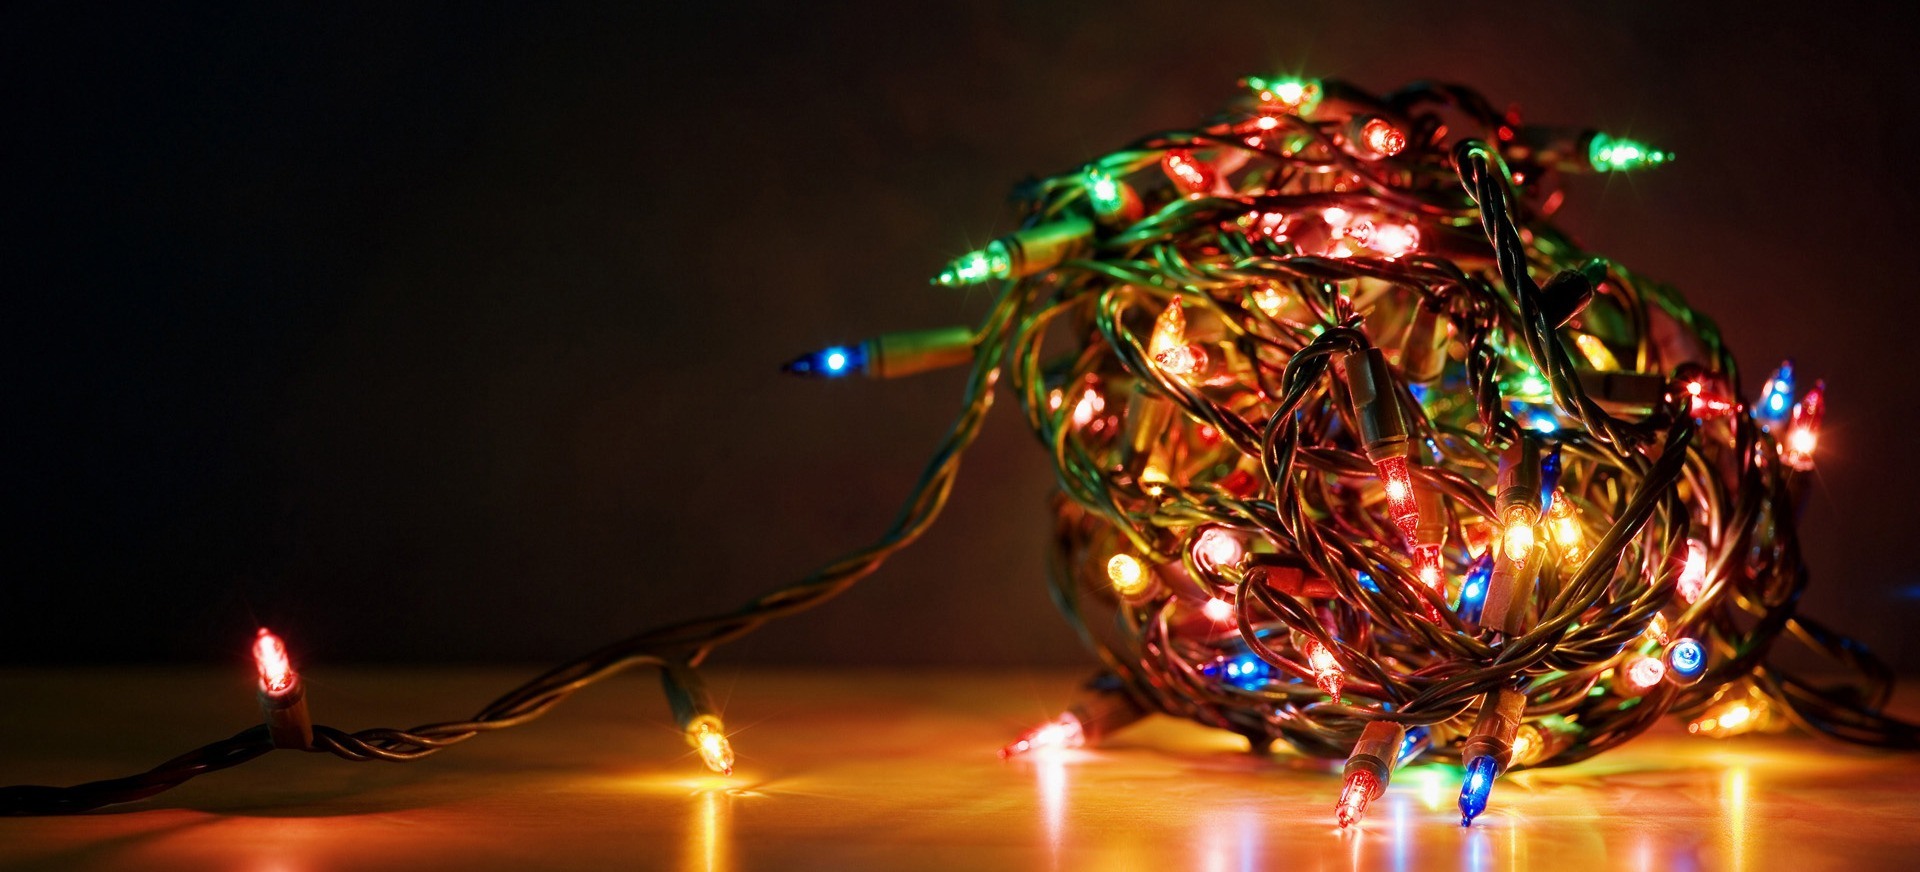 Tem jeito de economizar energia com a iluminação de Natal? - Lustres no  Atacado - Distribuidora e Importadora de Lustres